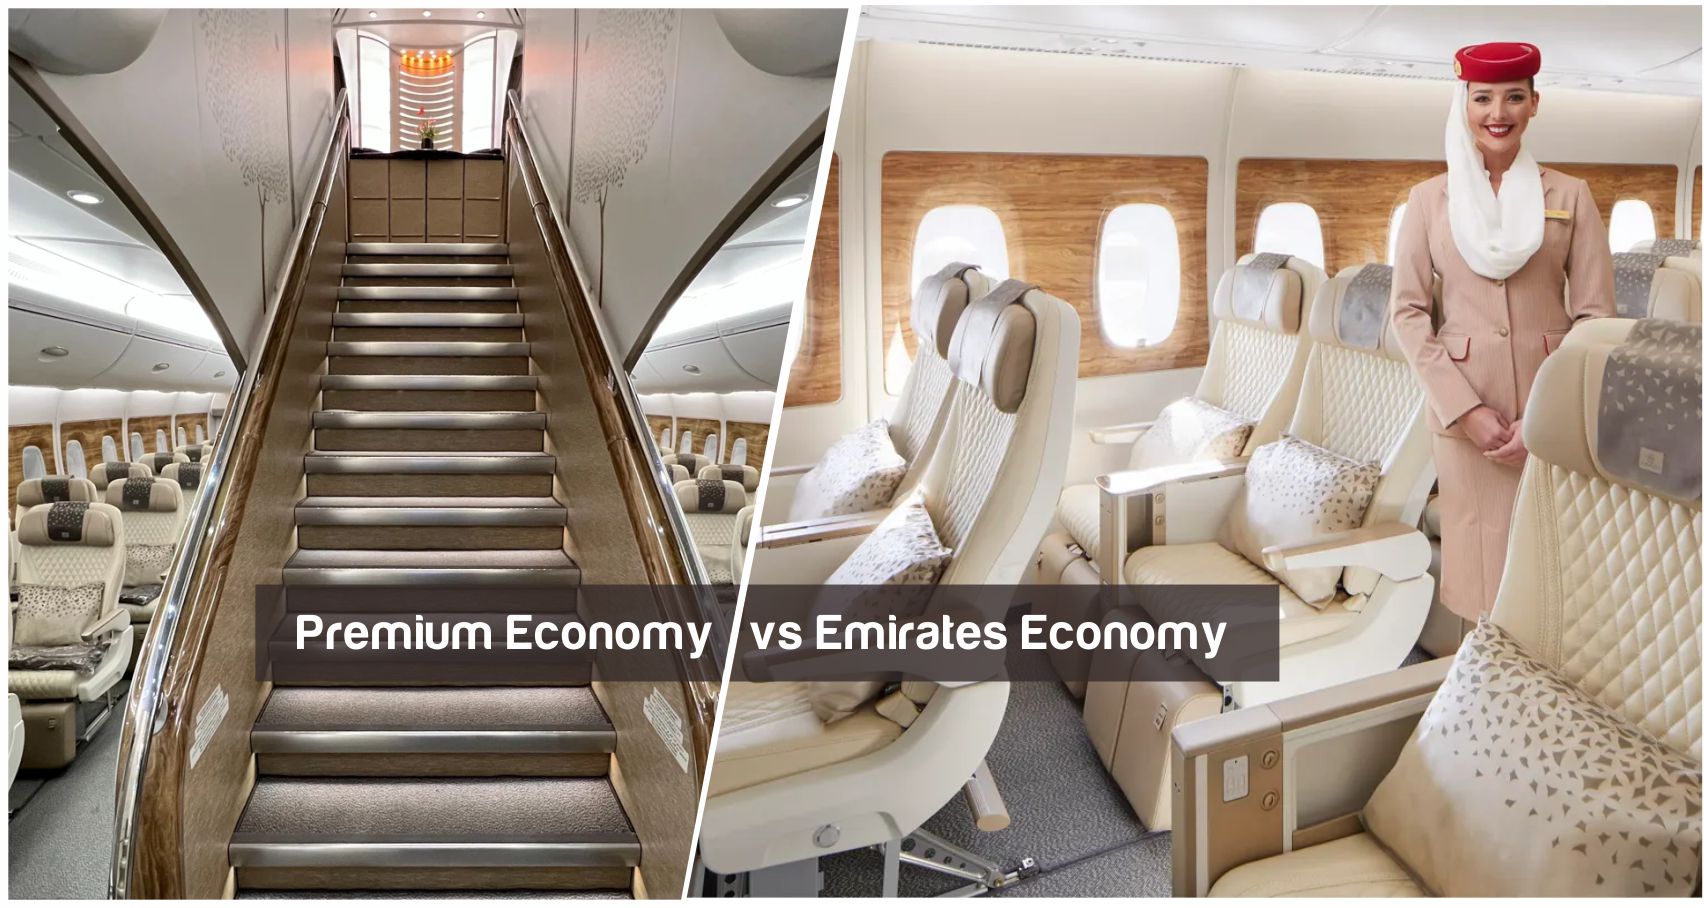 Emirates Economy vs Premium Economy